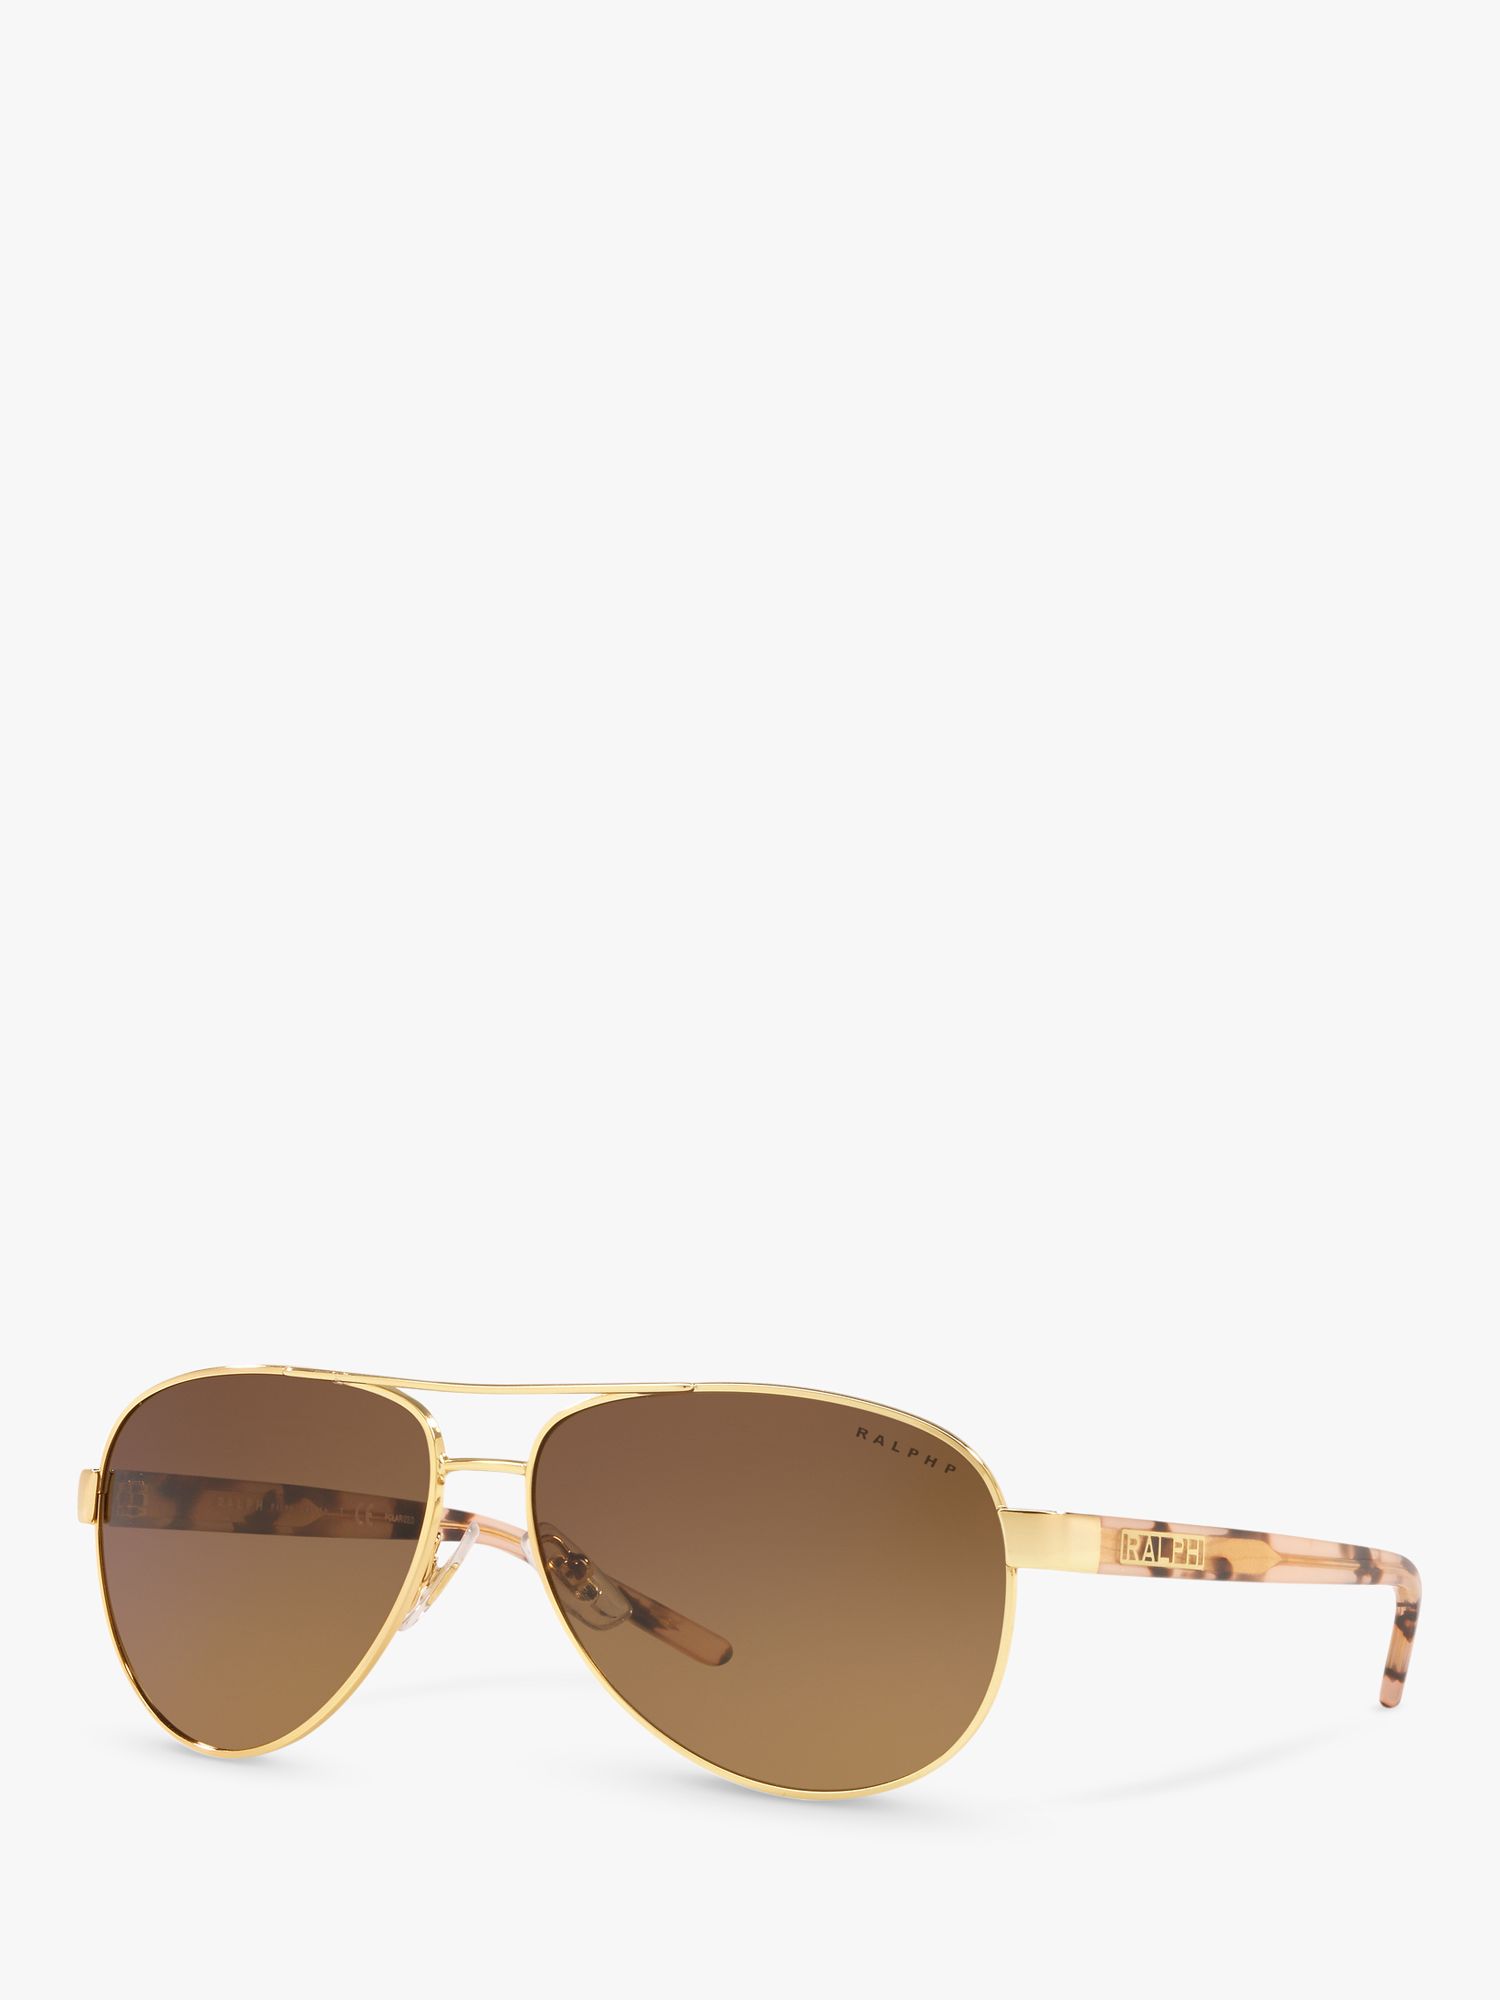 Женские солнцезащитные очки-авиаторы Ralph Lauren RA4004, золотисто-коричневые цена и фото